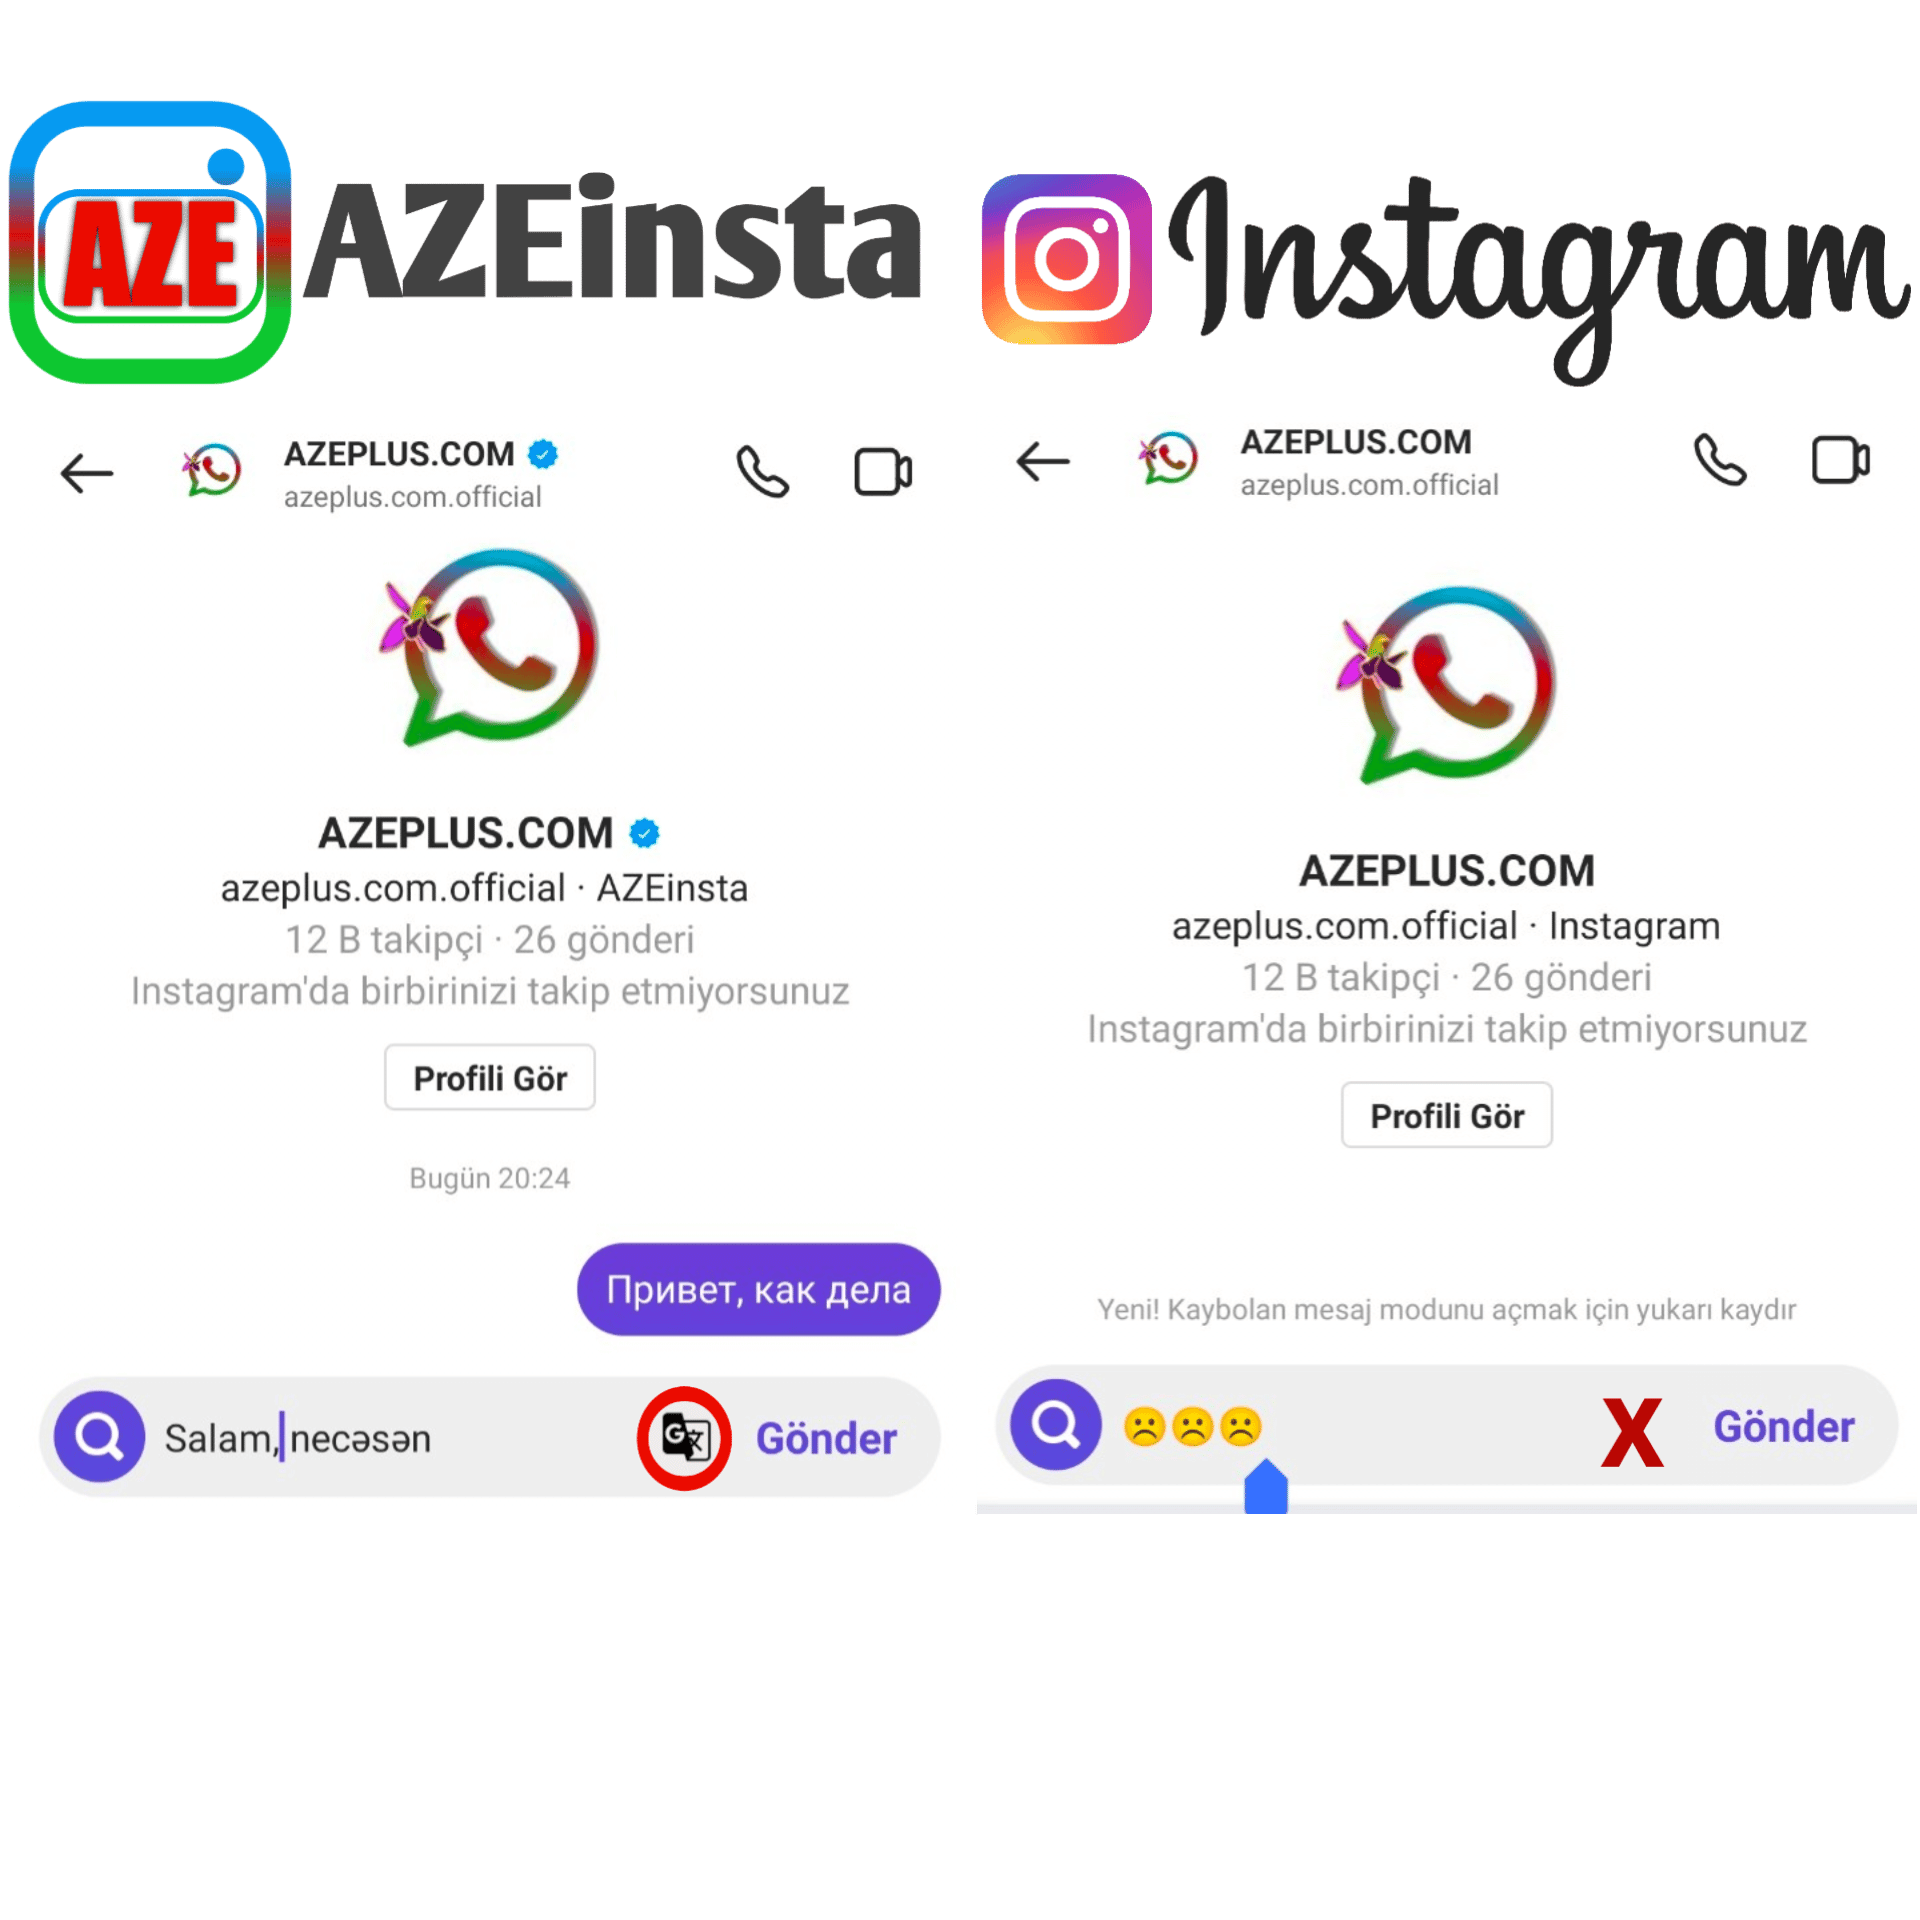 AZEinsta və instagram fərqi